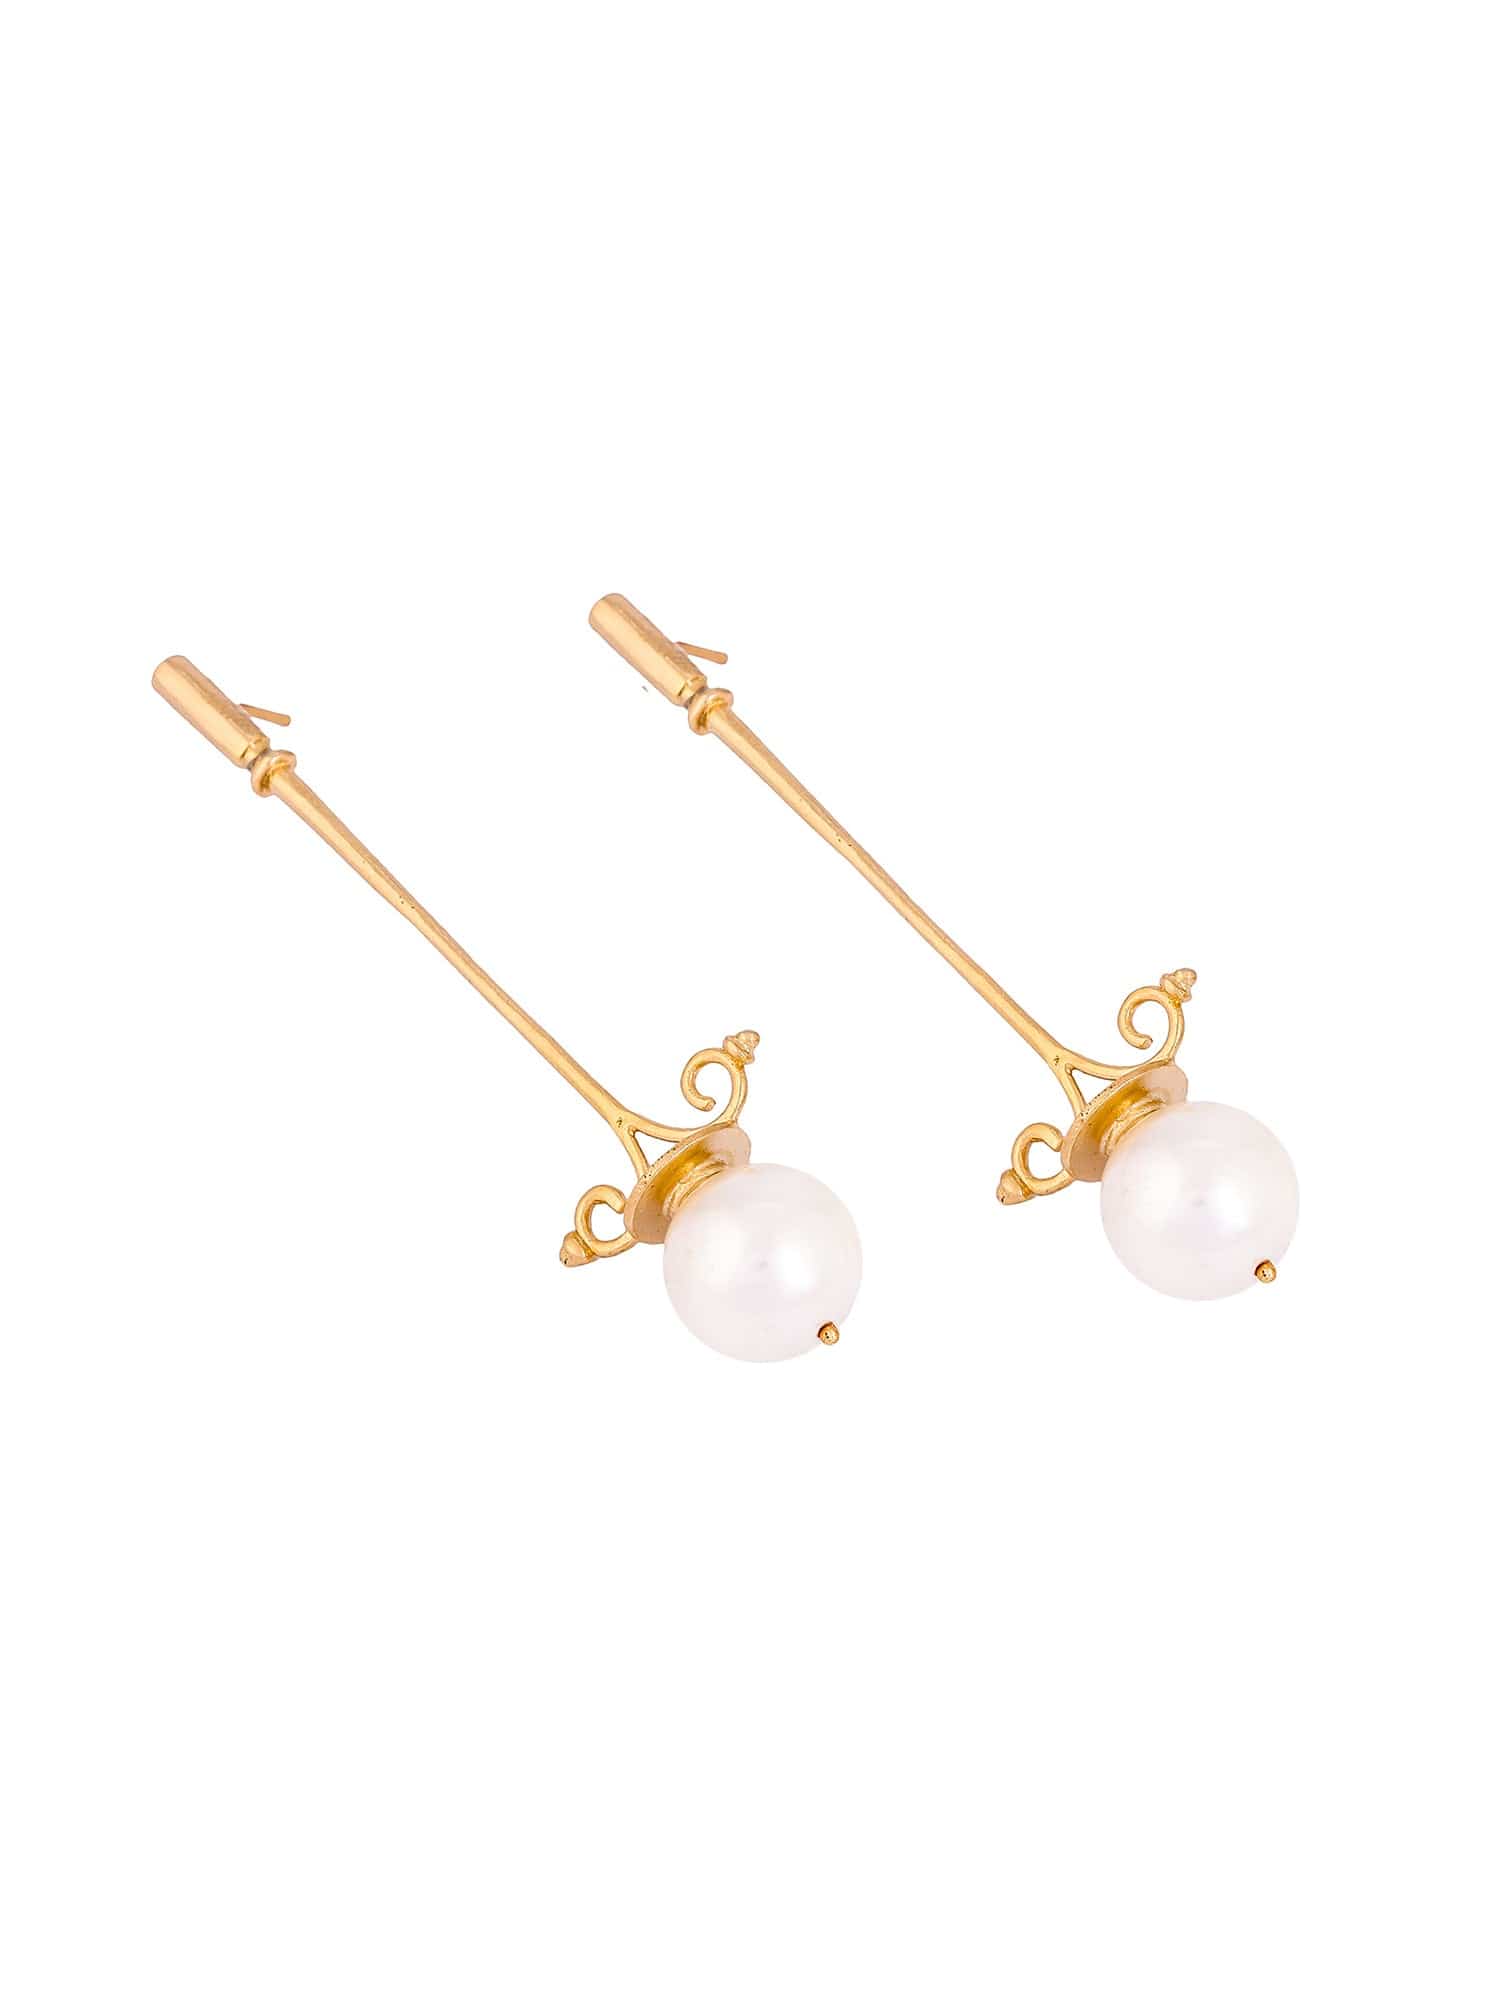 Lampadaire earrings